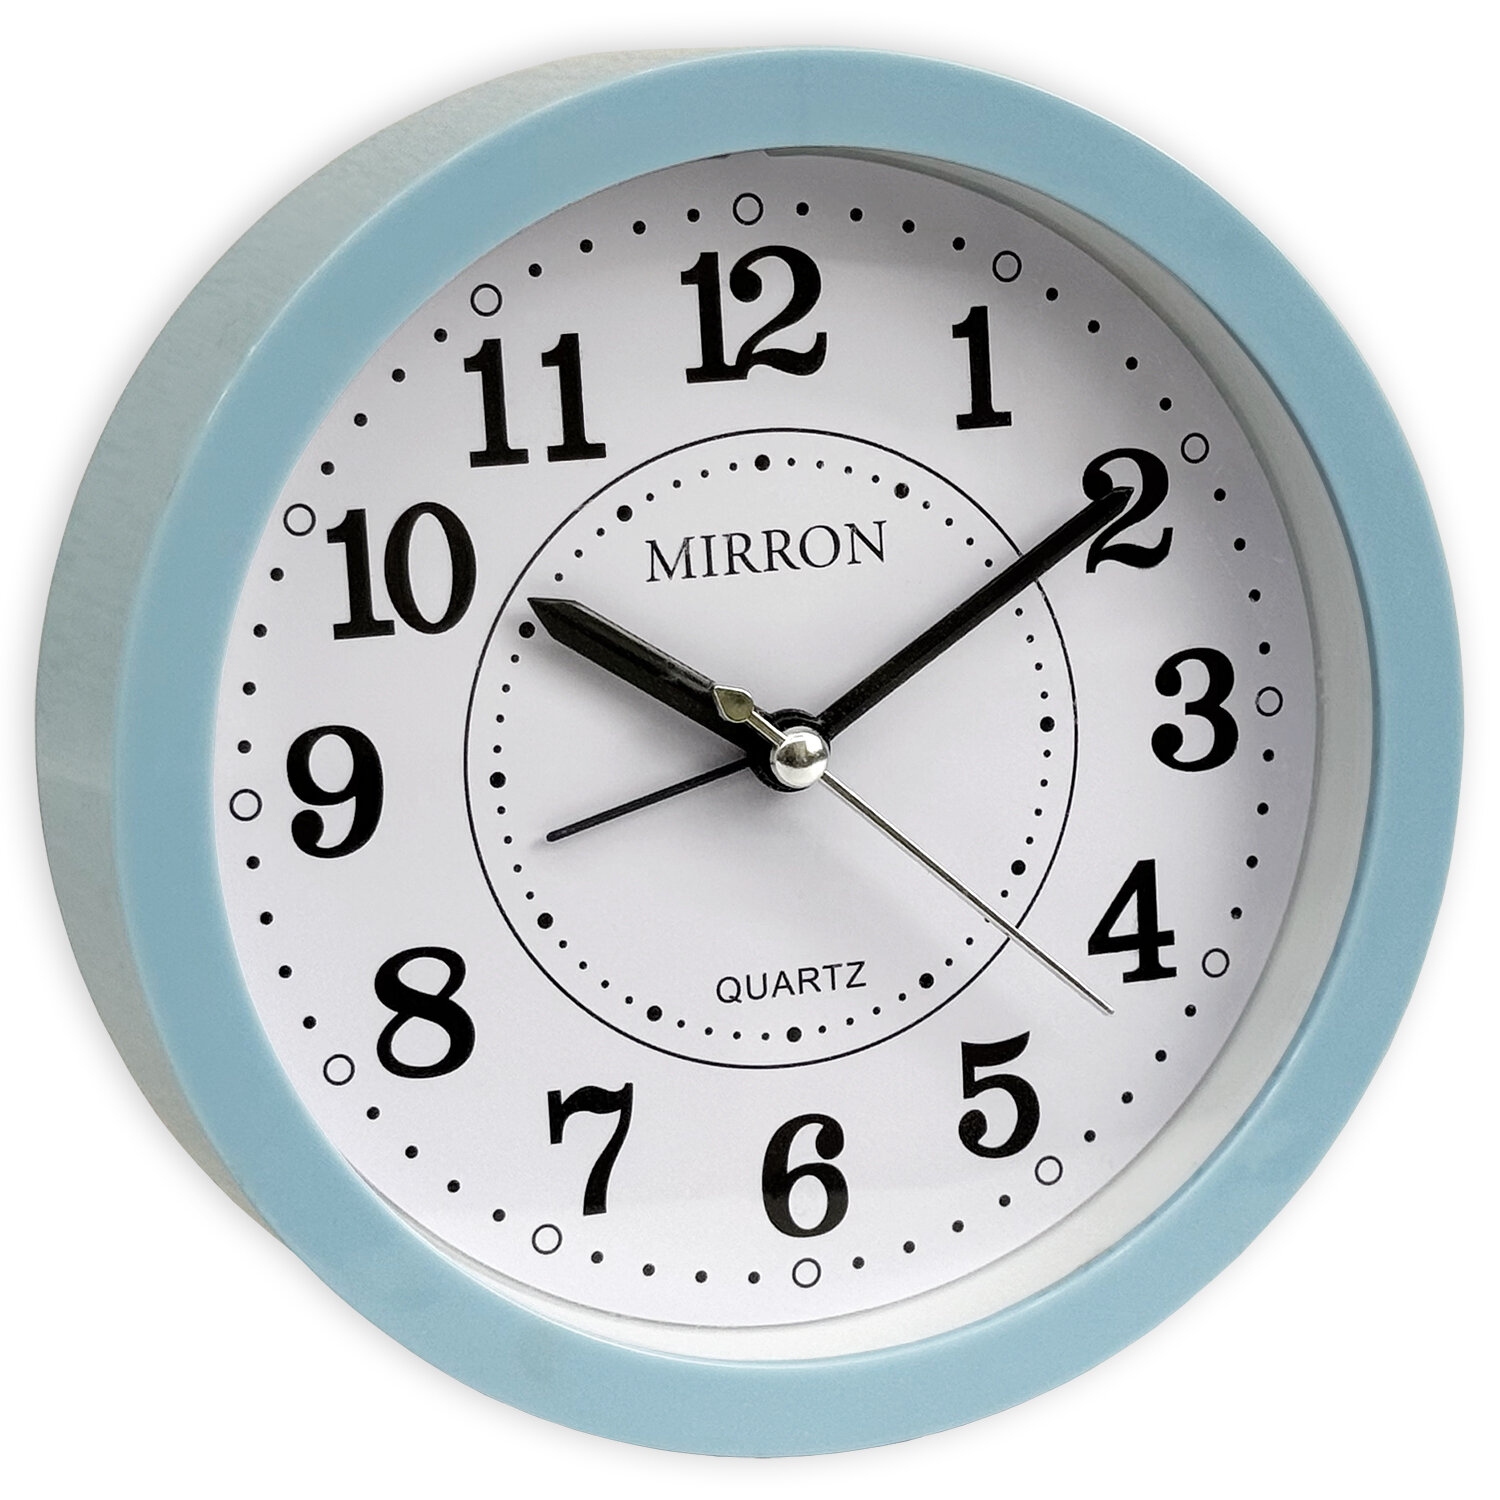 Классический настольный будильник MIRRON 8341 СН/Часы в спальню/Круглый будильник/Часы для детской/Голубой цвет